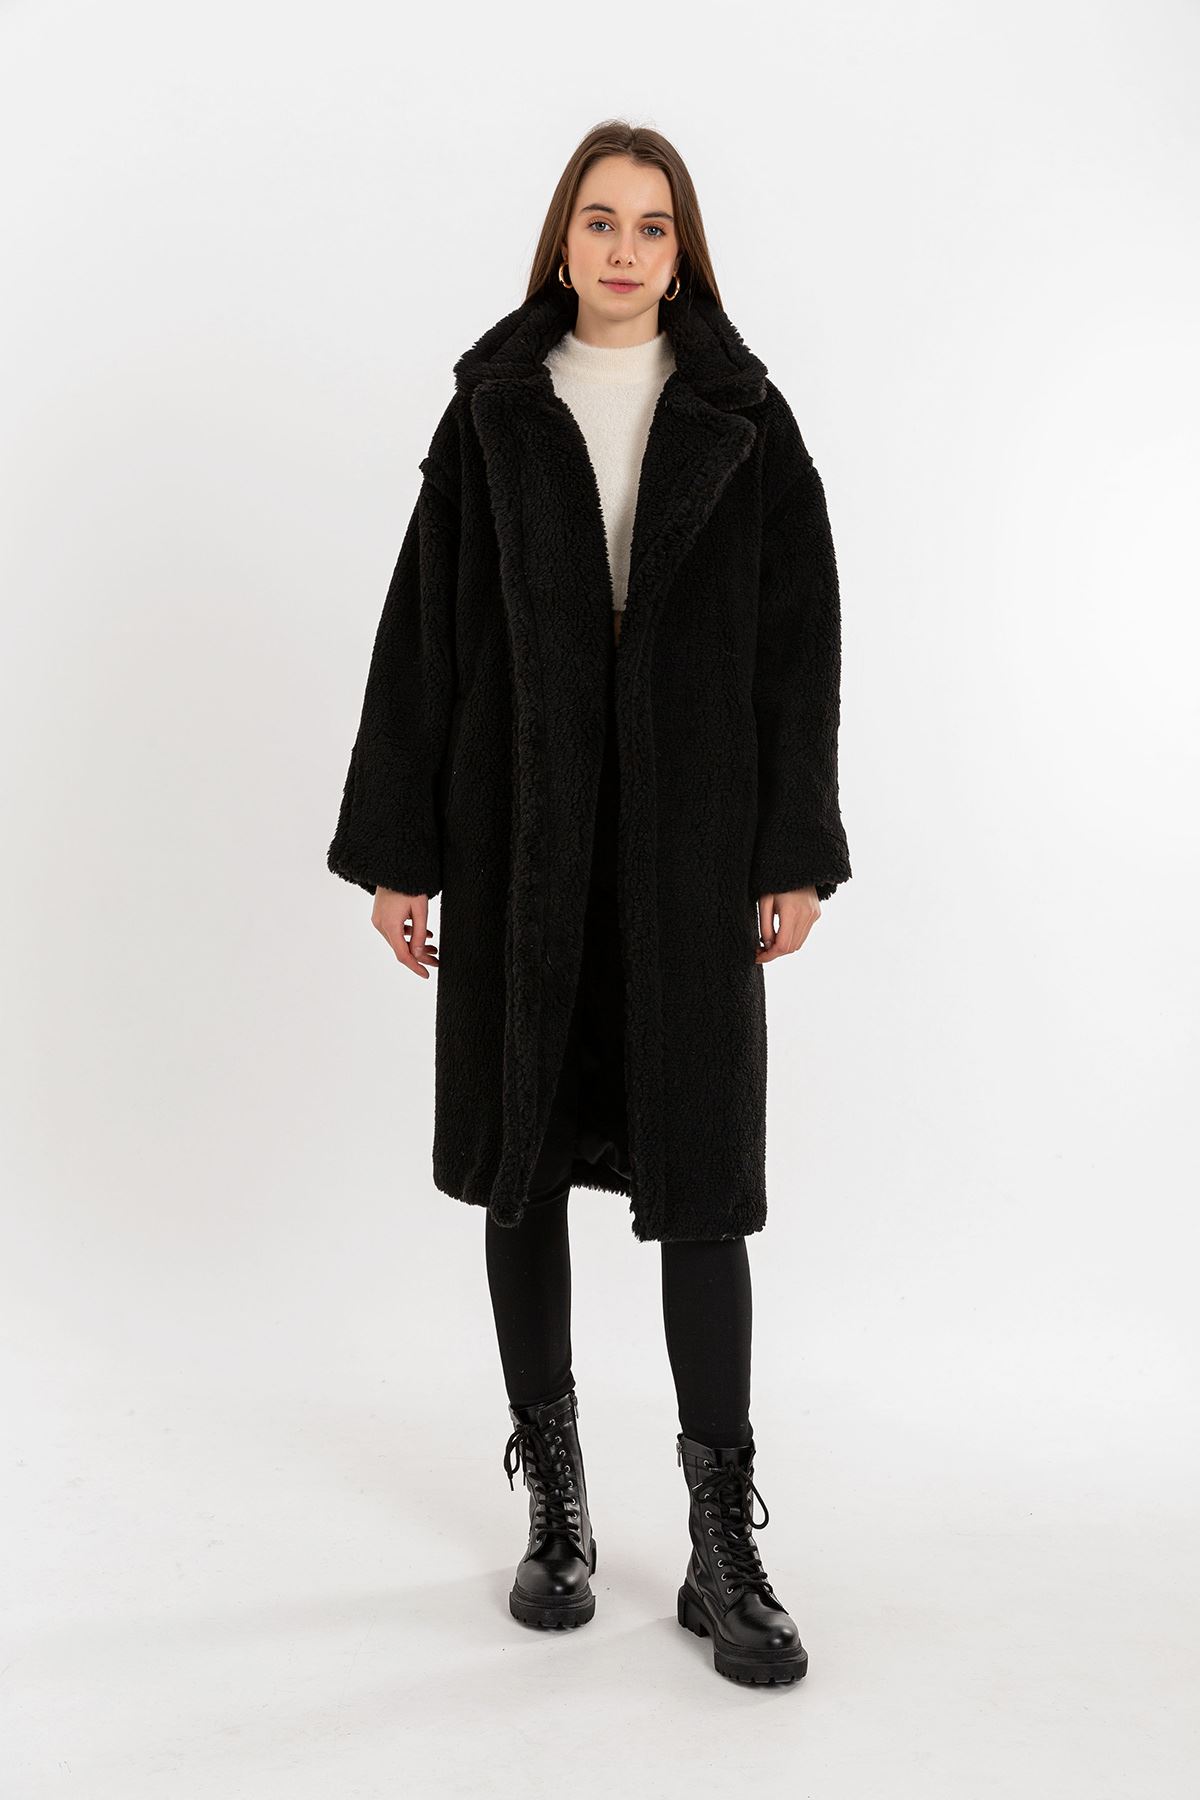 Teddy Fabric Long Sleeve Revere Collar Below Knees Oversize Women'S Coat - Black